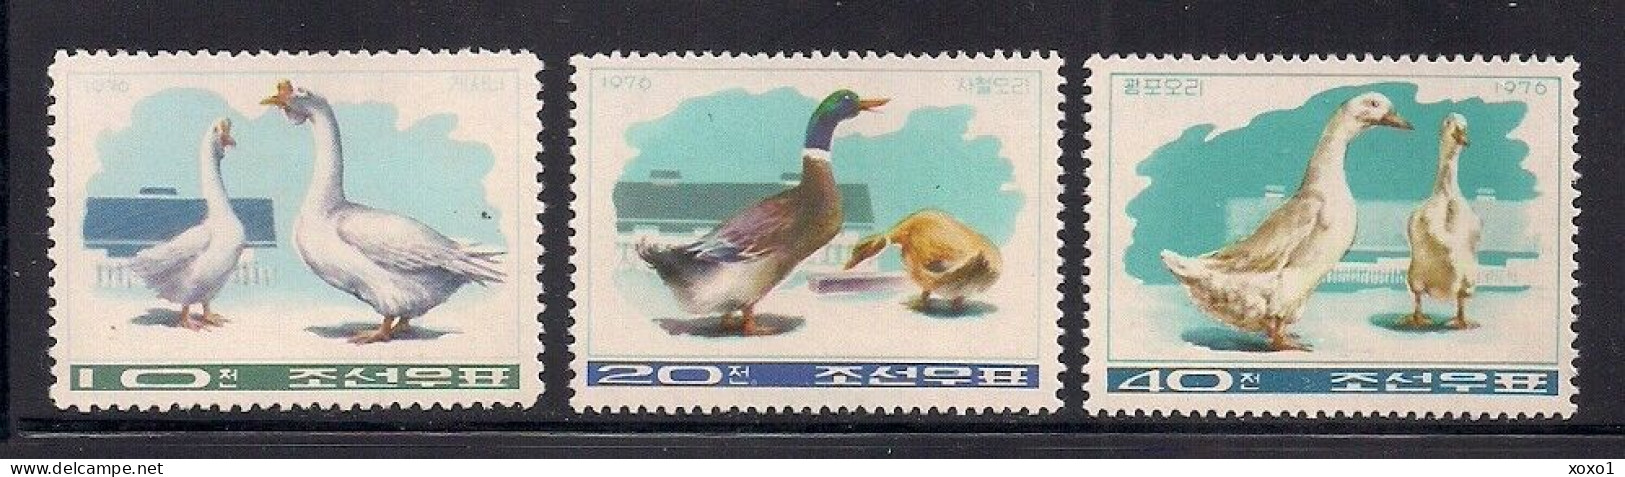 Korea, North 1976 MiNr. 1467 - 1469 Korea-Nord  Vögel Birds Farm  3v  MNH ** 7.00 € - Gansos